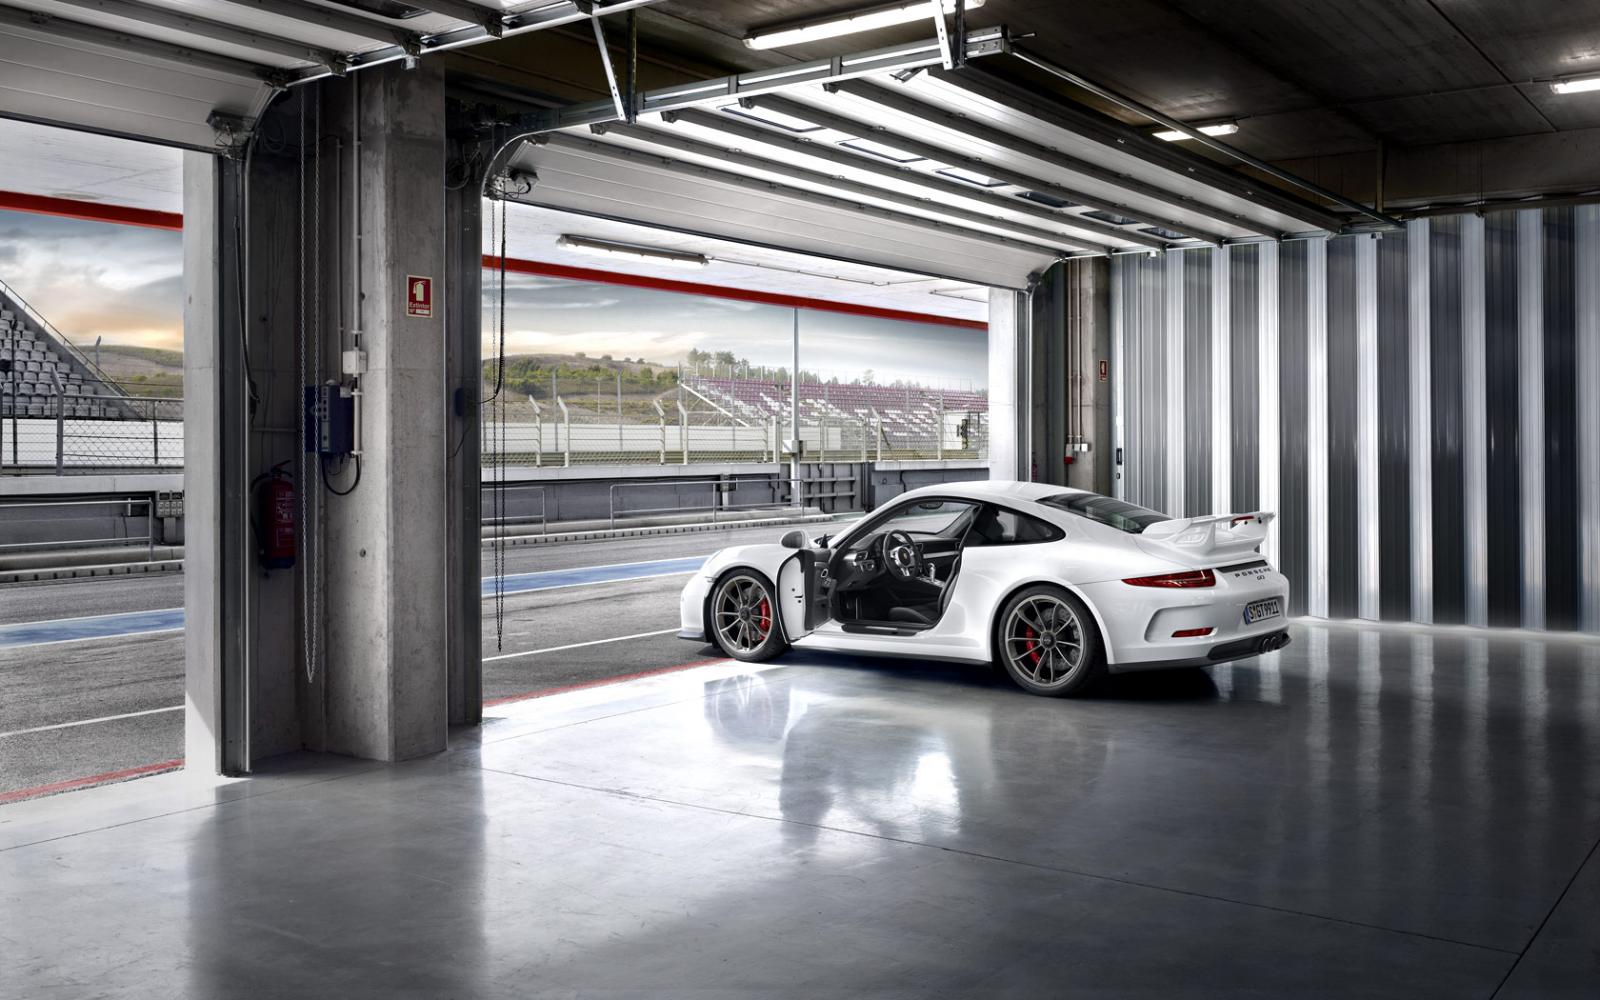 2014 Porsche 911 GT3 k wallpaper 1600x1000 79932 WallpaperUP